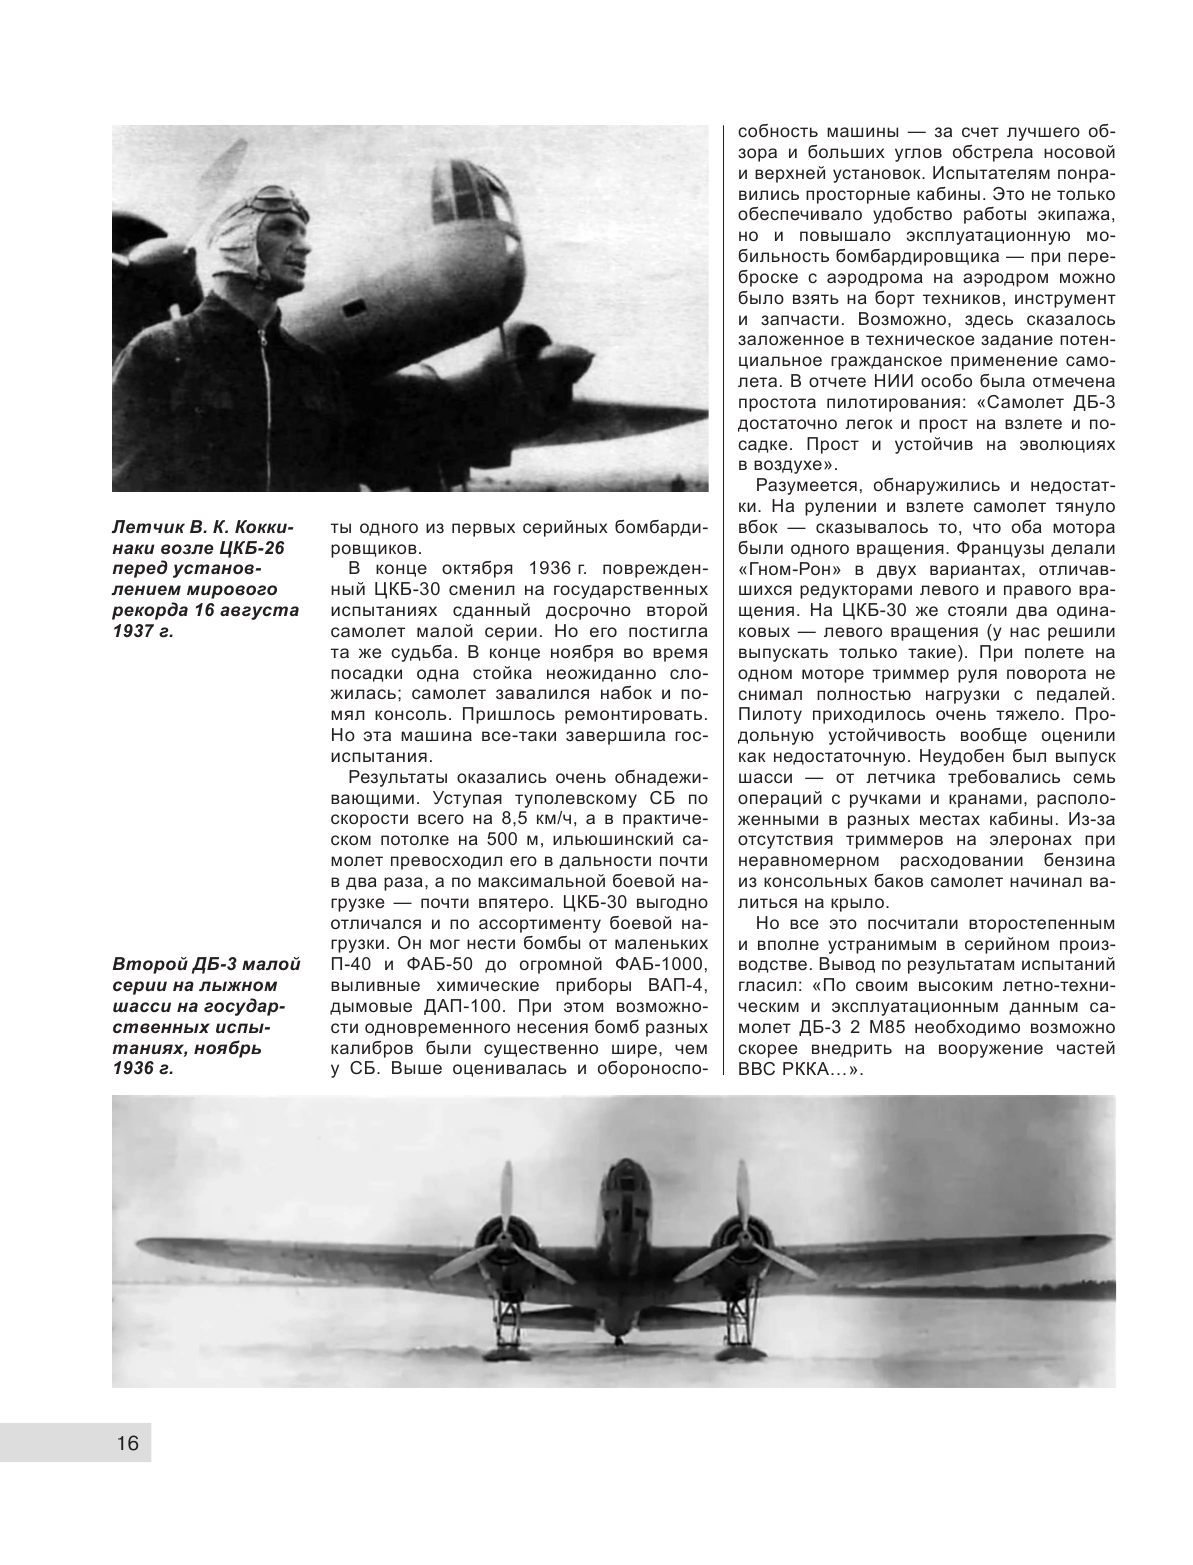 ДБ-3/Ил-4 и его модификации. Торпедоносец и основа Авиации Дальнего Действия - фото №17